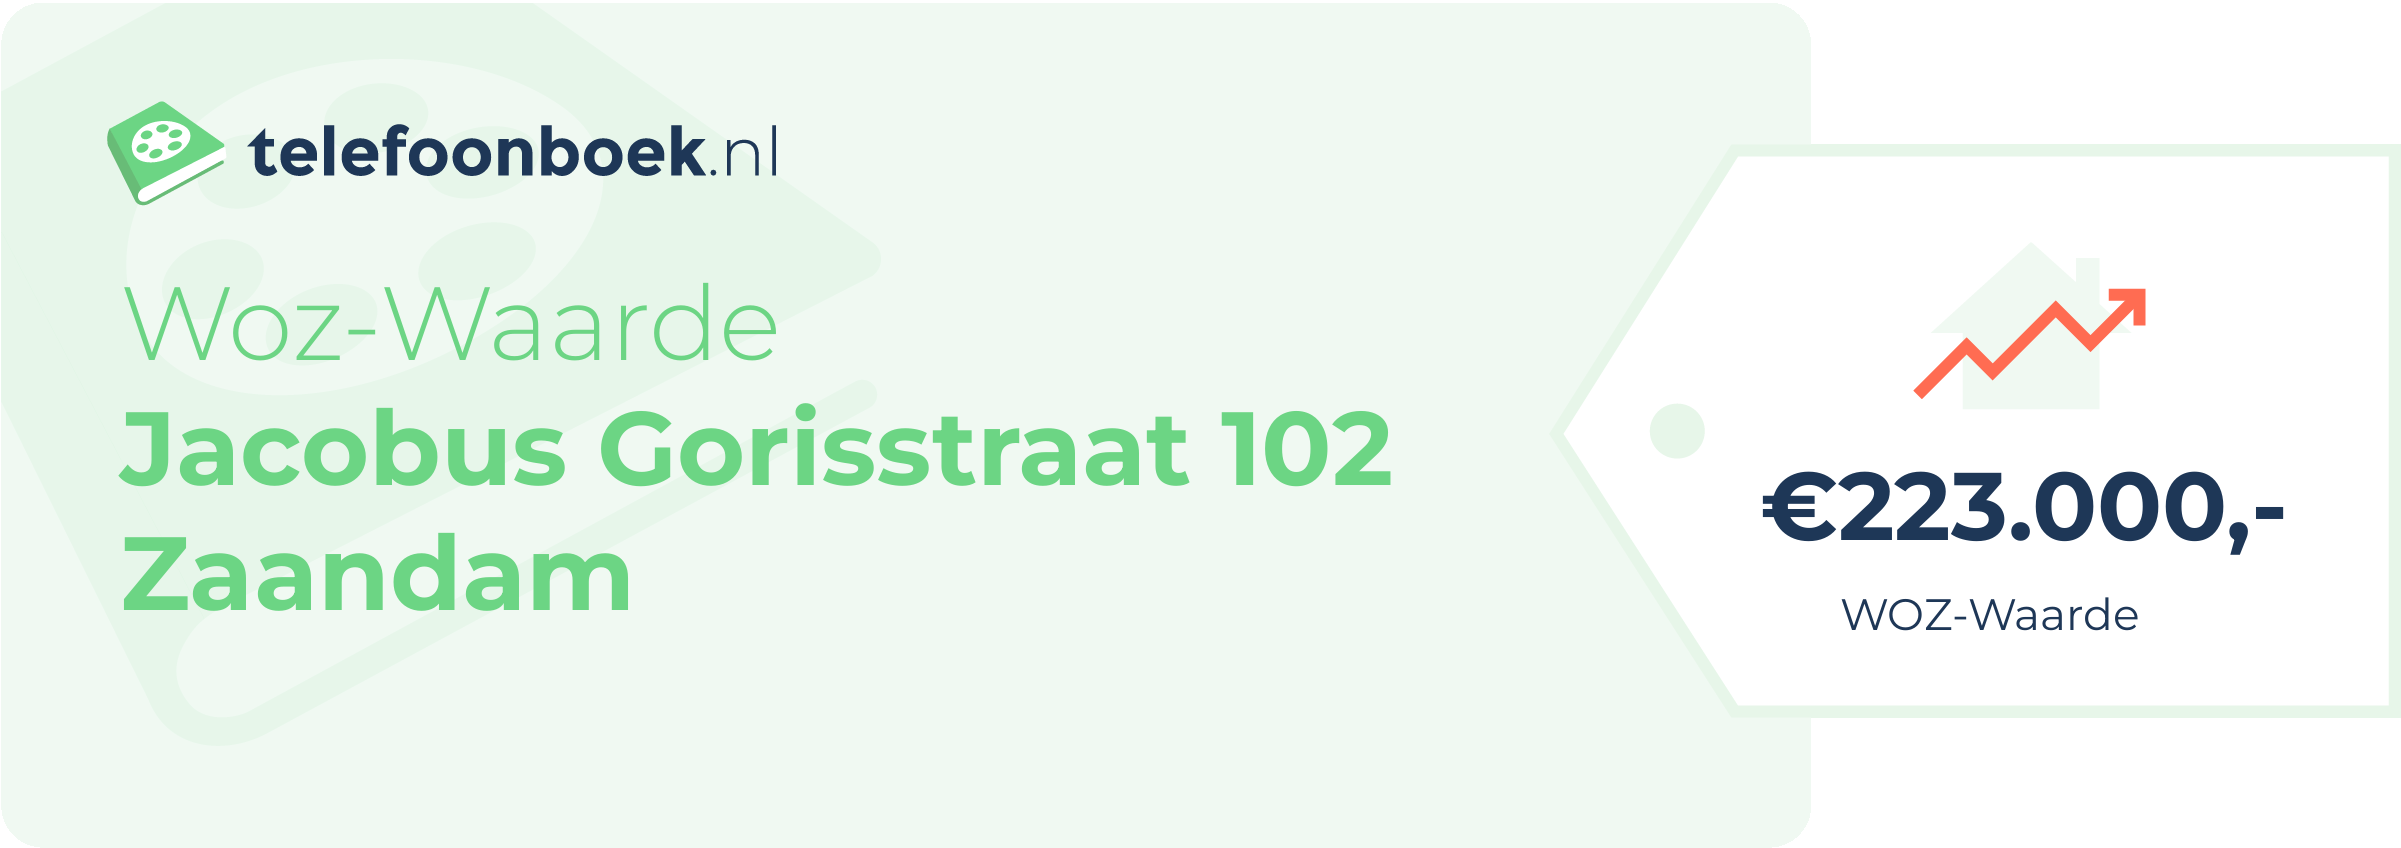 WOZ-waarde Jacobus Gorisstraat 102 Zaandam